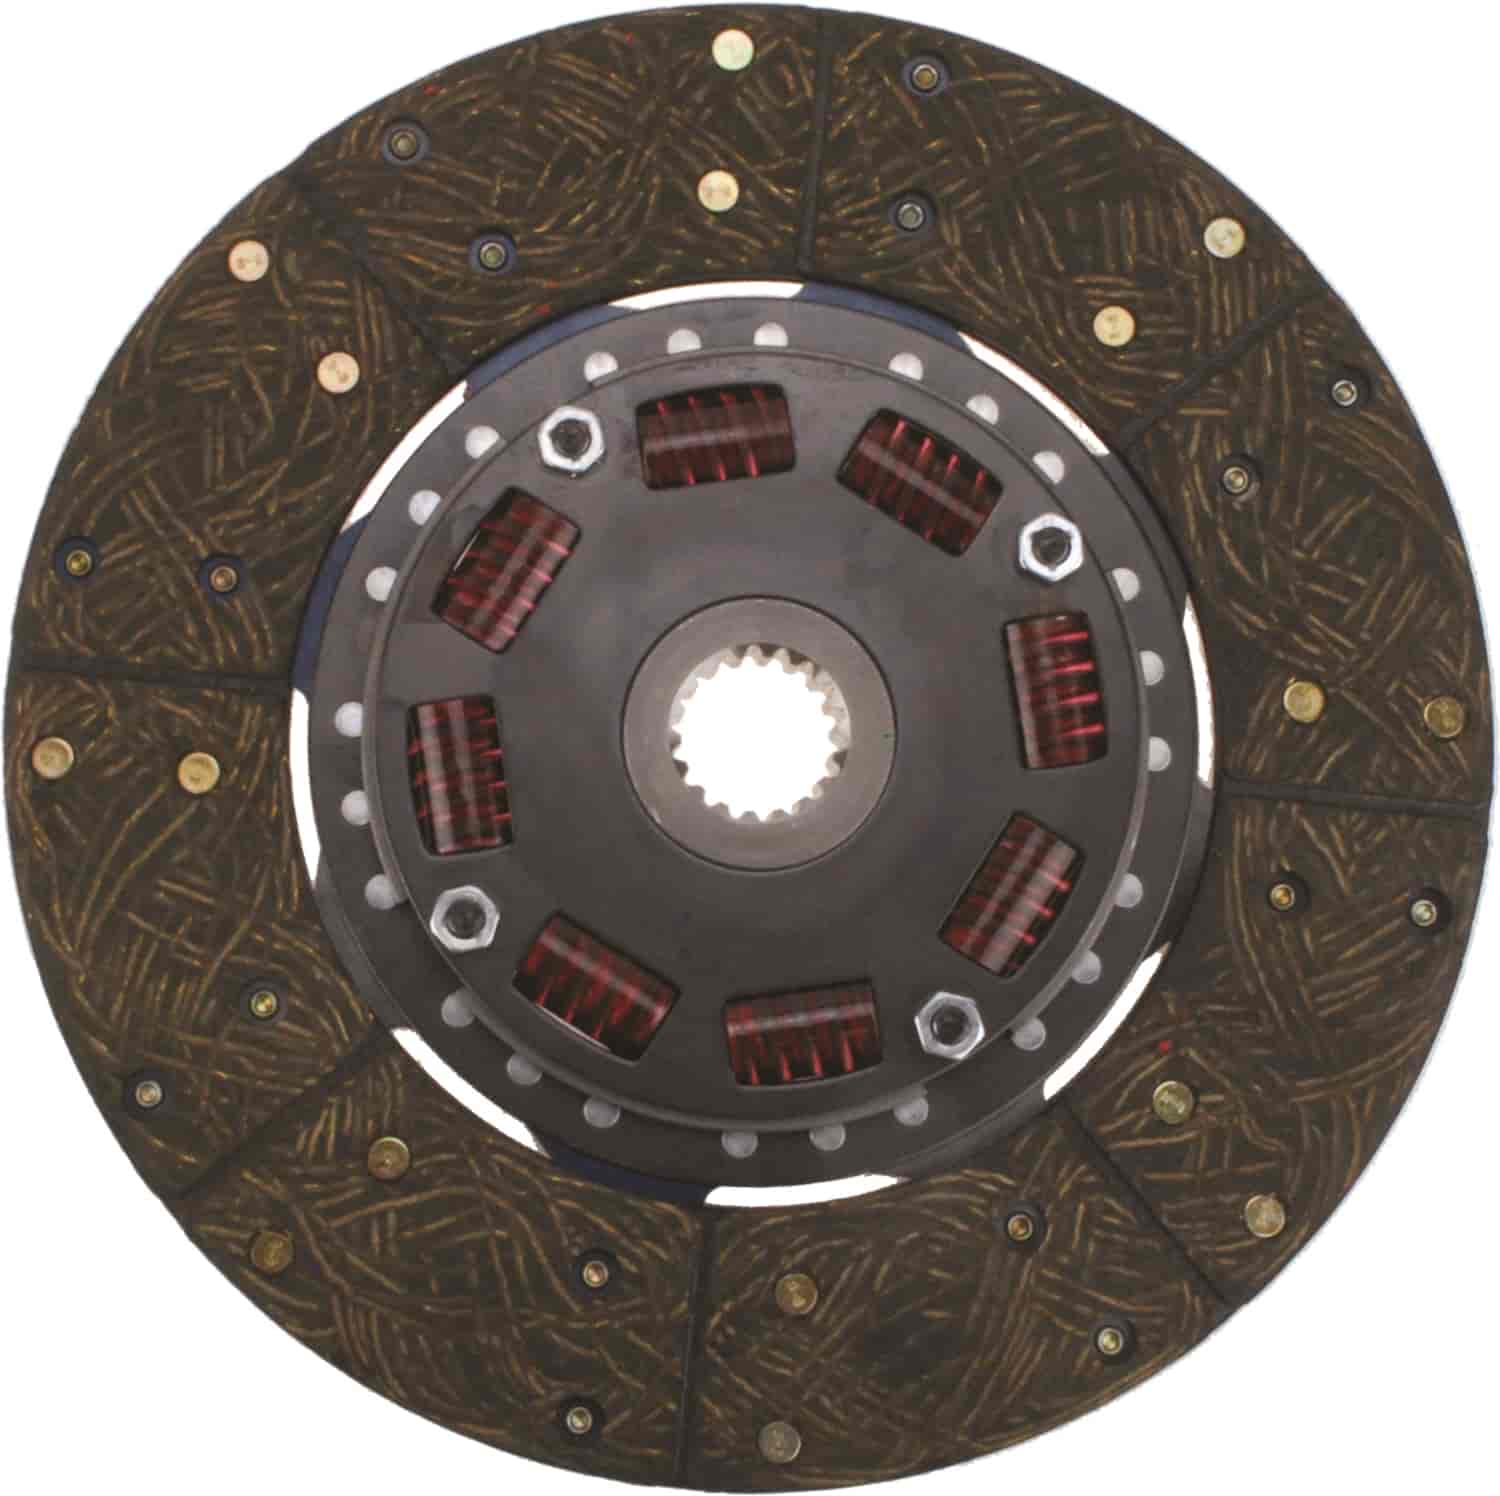 300 Series Sprung Center Clutch Disc 10-1/2" Diameter